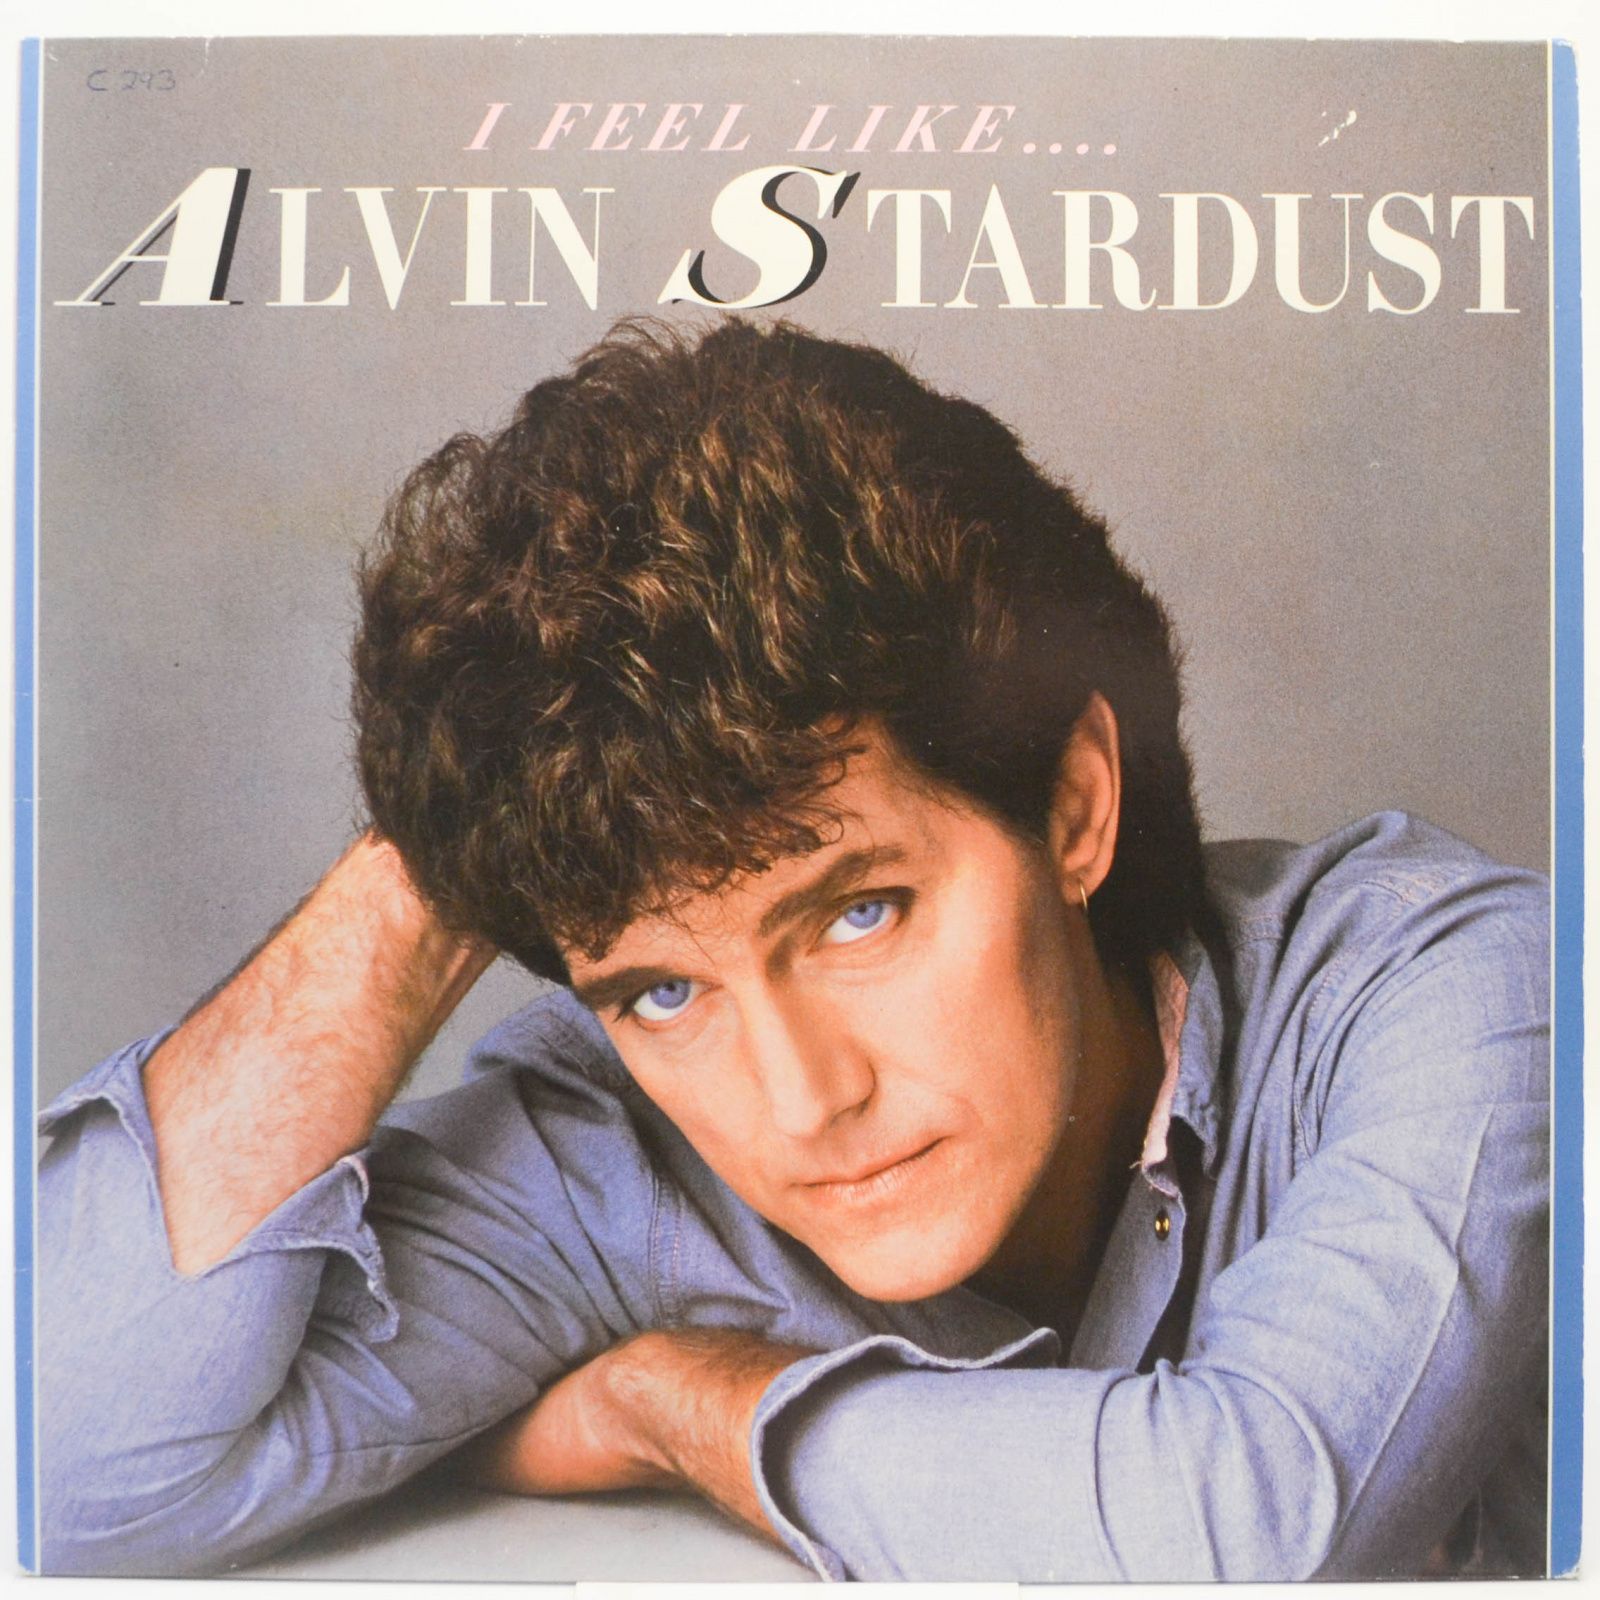 I Feel Like... Alvin Stardust, 1984